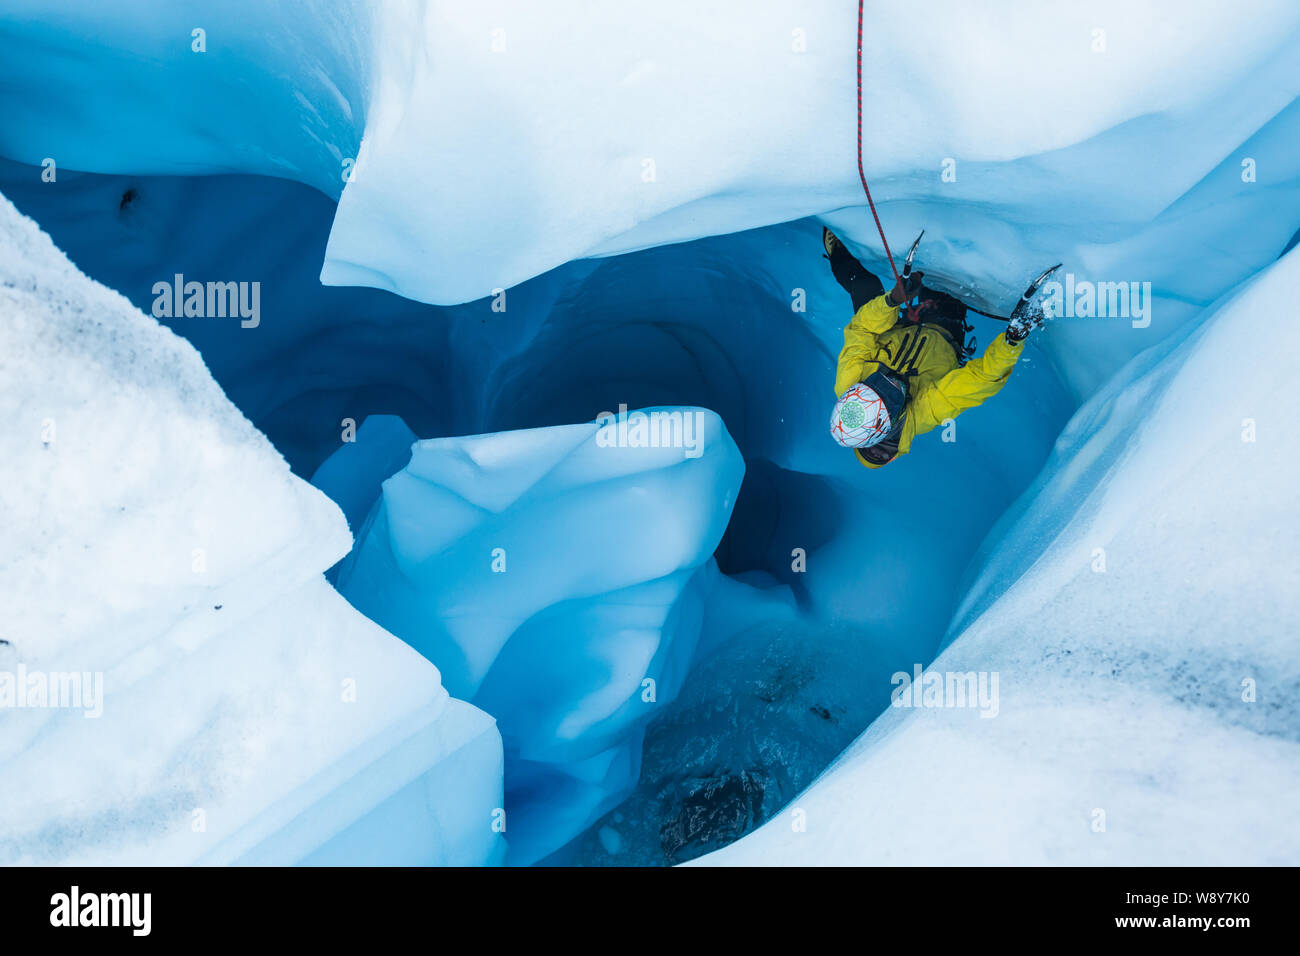 Mann in Gelb jecket Klettern eine überhängende Teil des Eises in einem Gletscher Moulin in Alaska. Seinen Fuß aus NACHLASSENDER als sein Werkzeug bricht das Eis in kleine Stockfoto